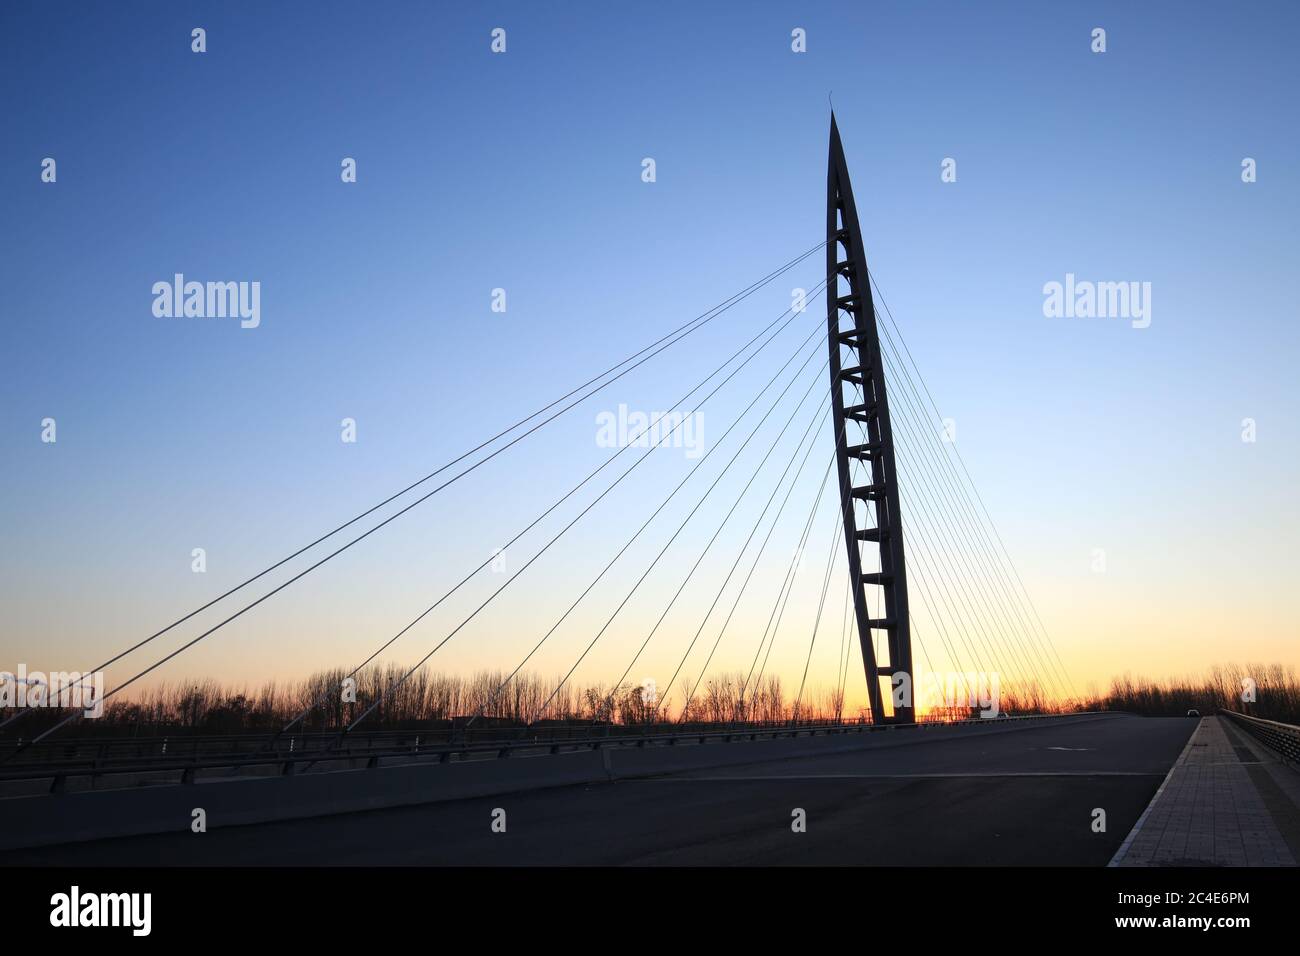 Suspension bridge in the evening Stock Photo